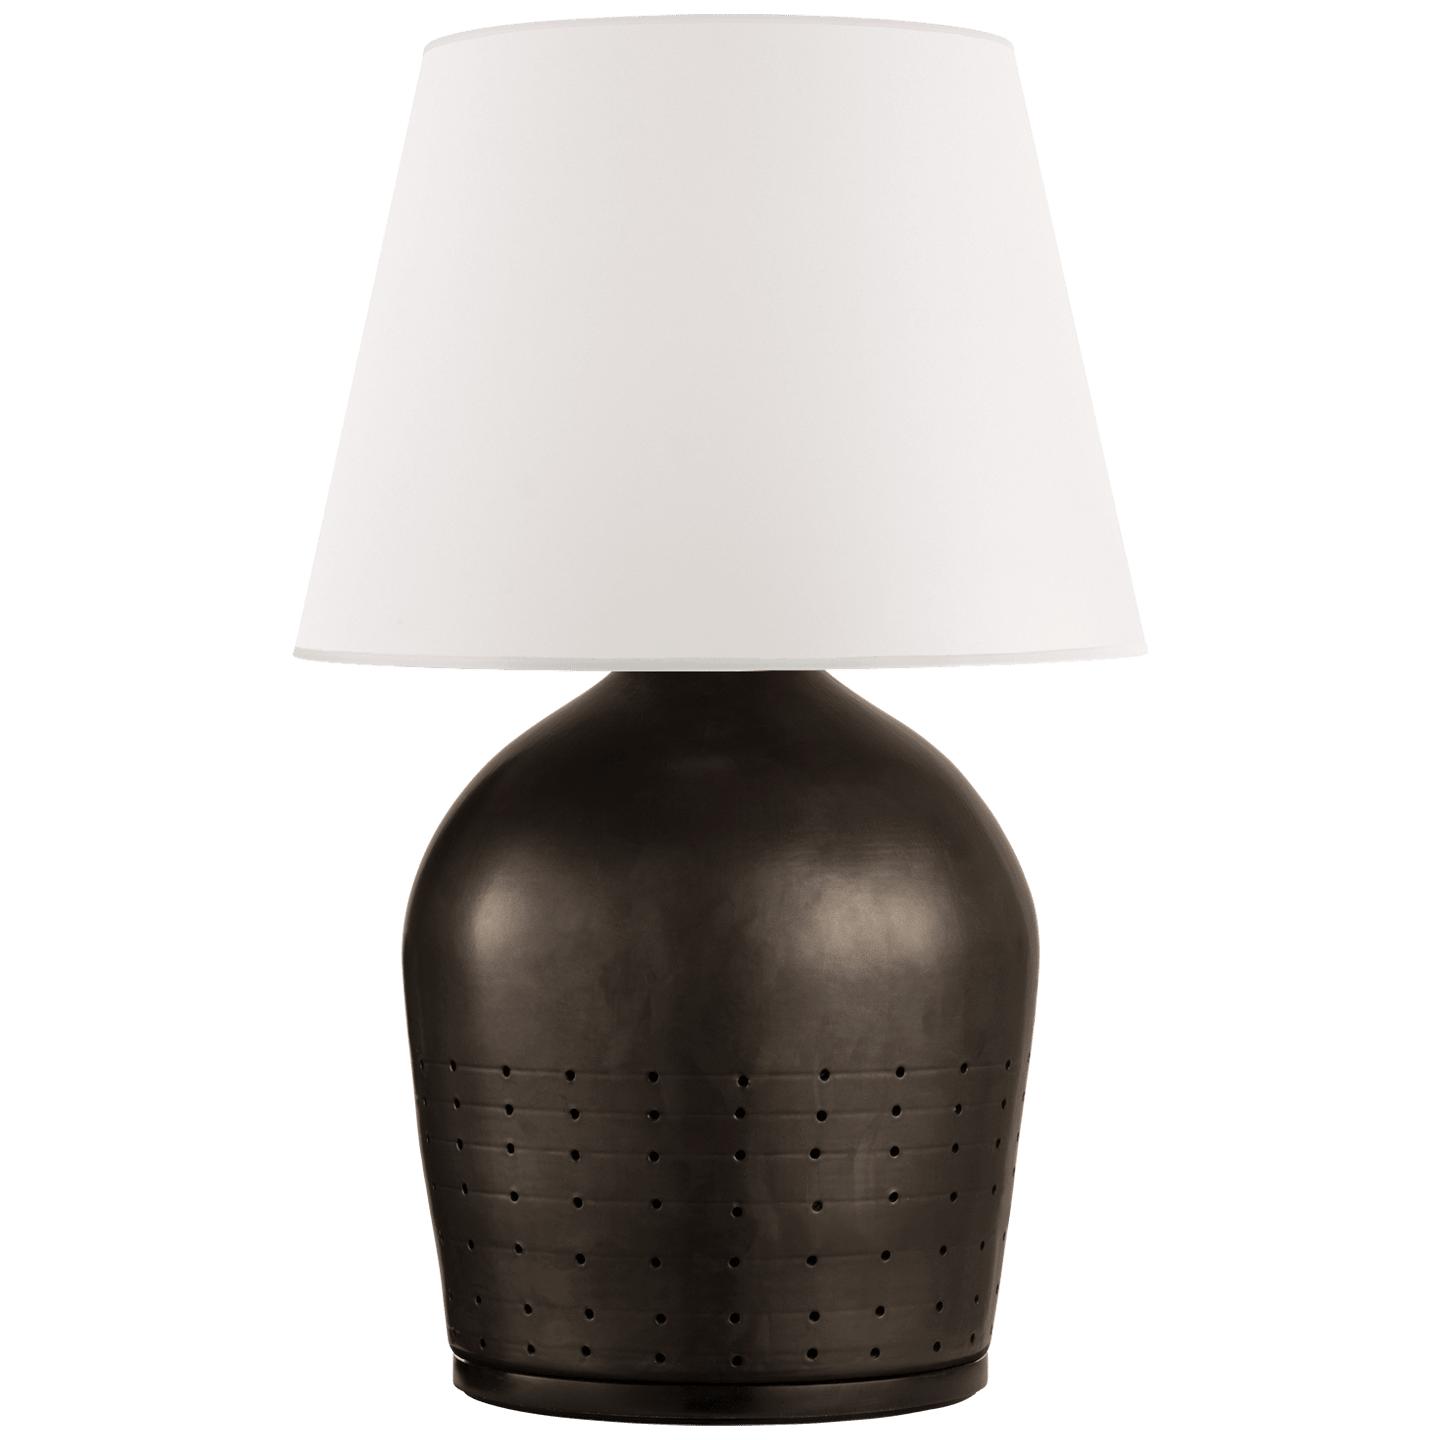 Купить Настольная лампа Halifax Small Table Lamp в интернет-магазине roooms.ru